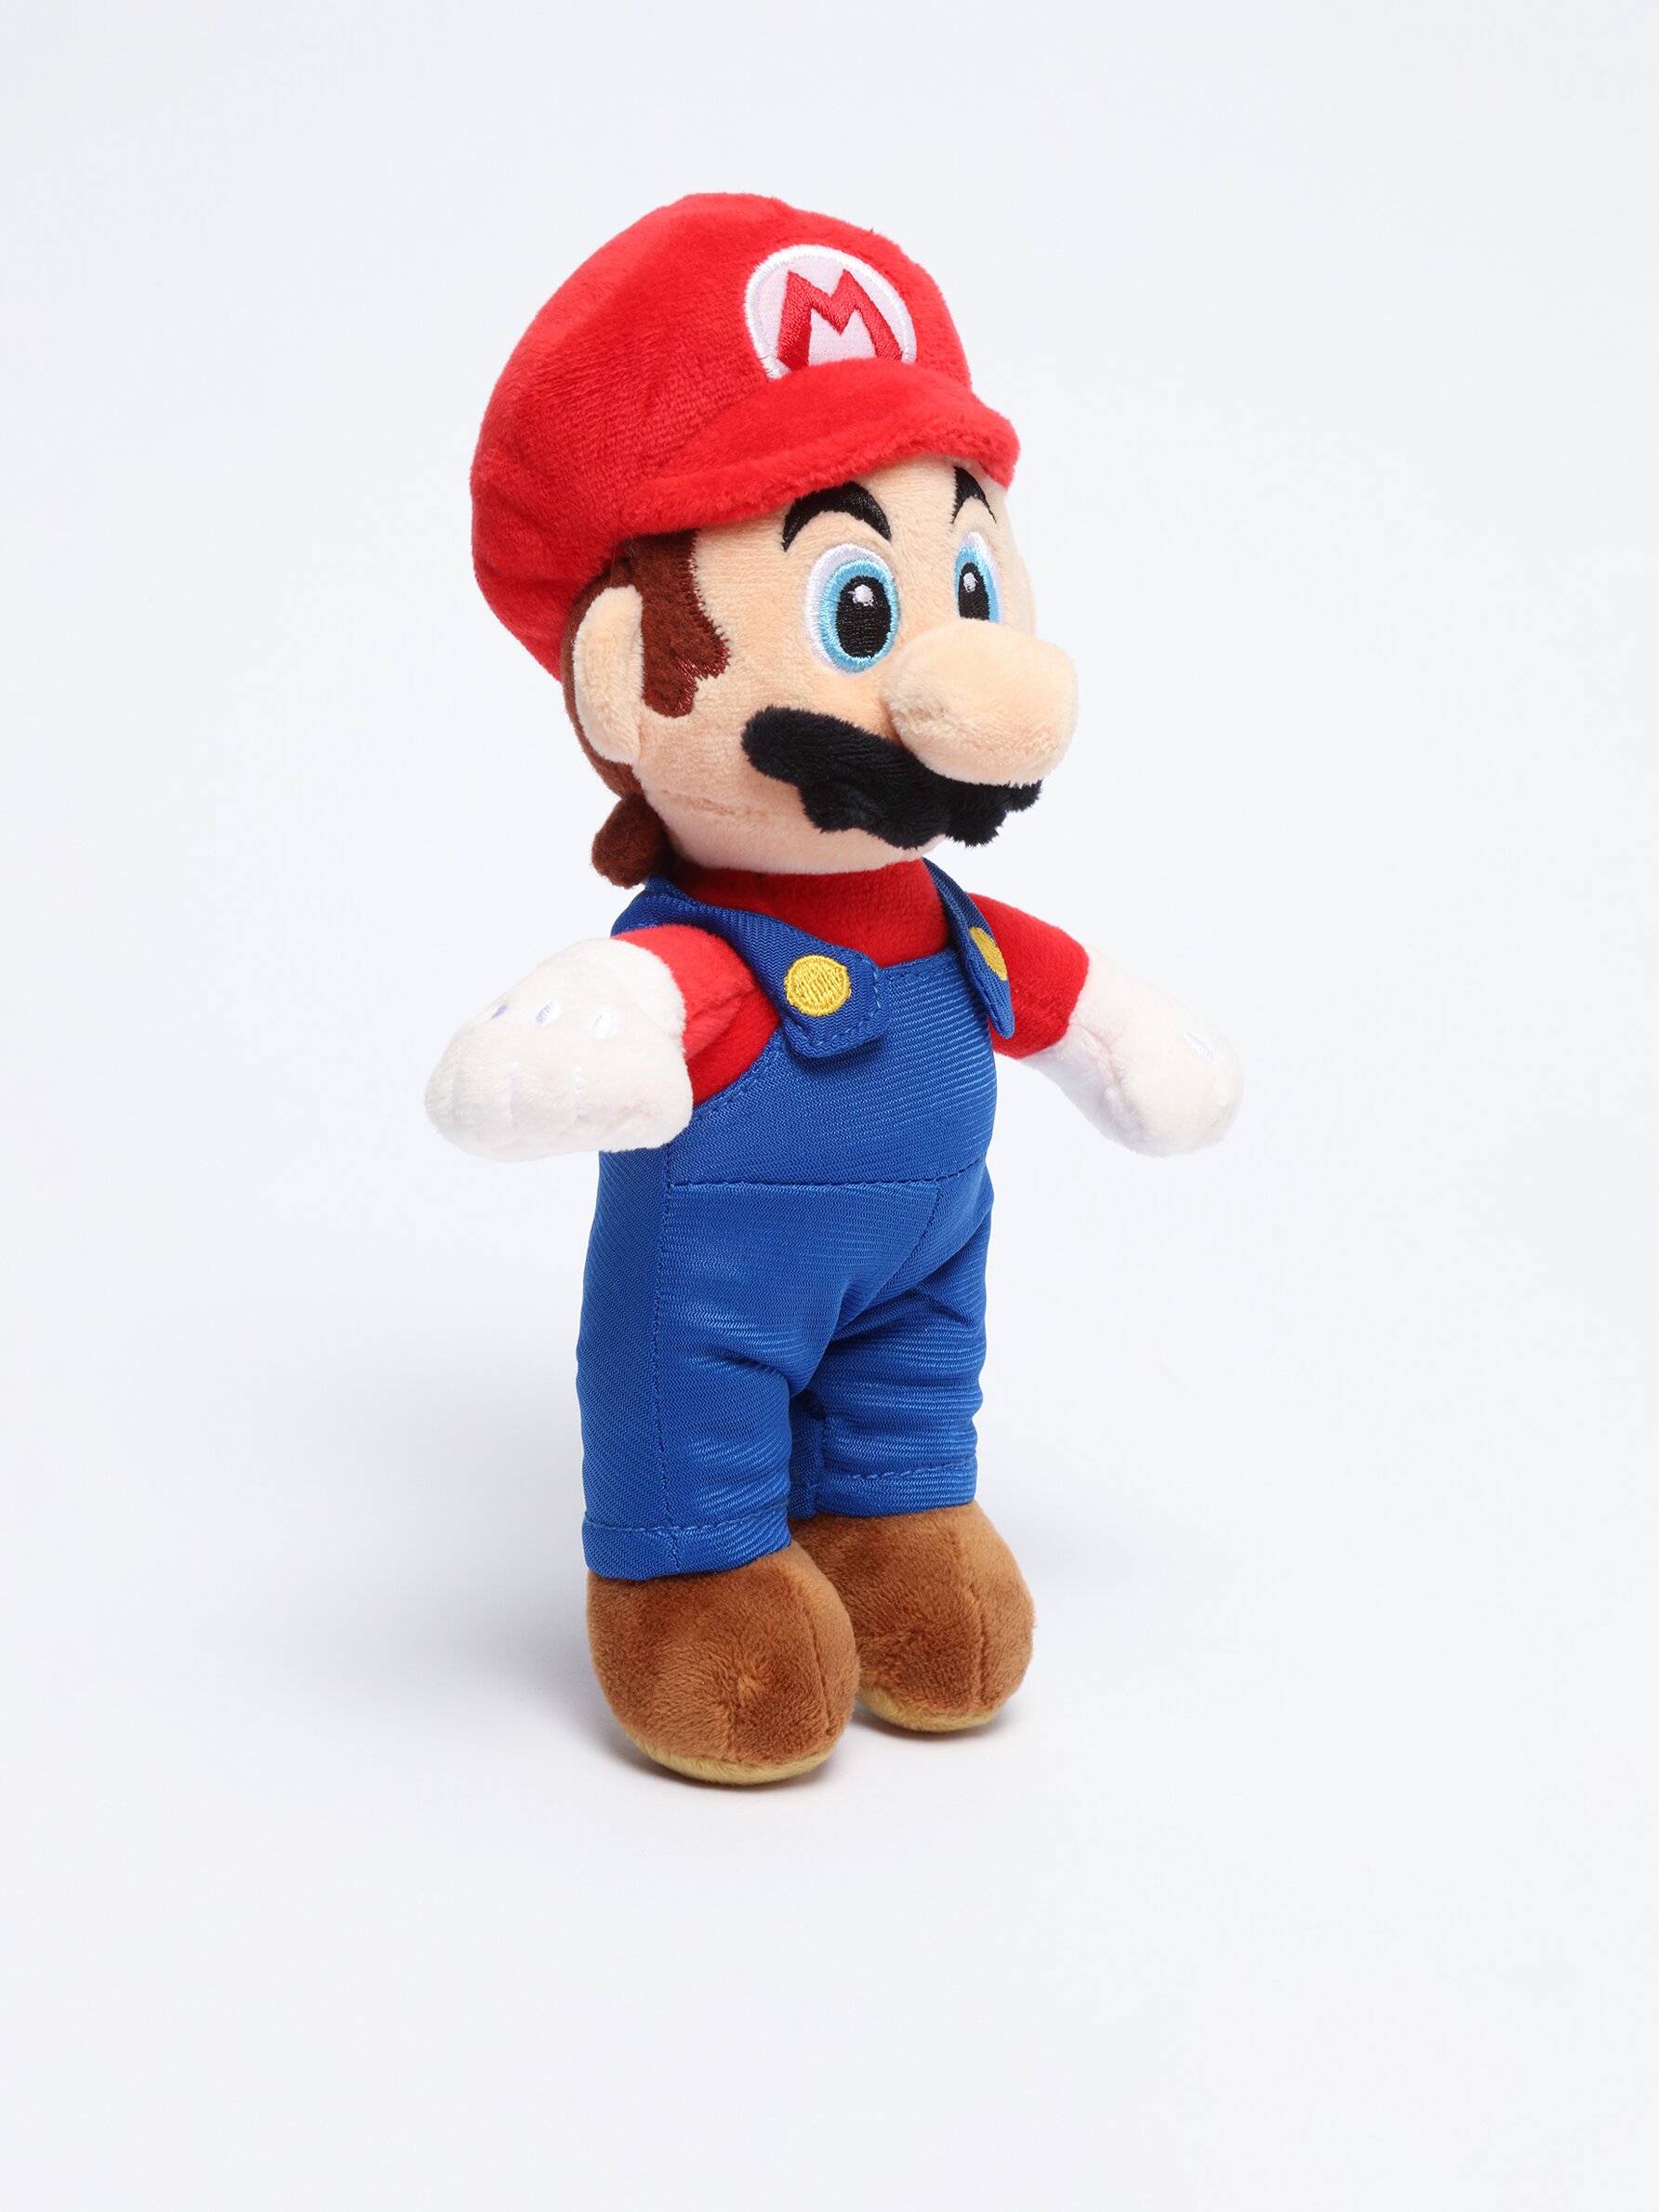 Mario Bros plush toy from Super Mario ™ Nintendo - Collabs